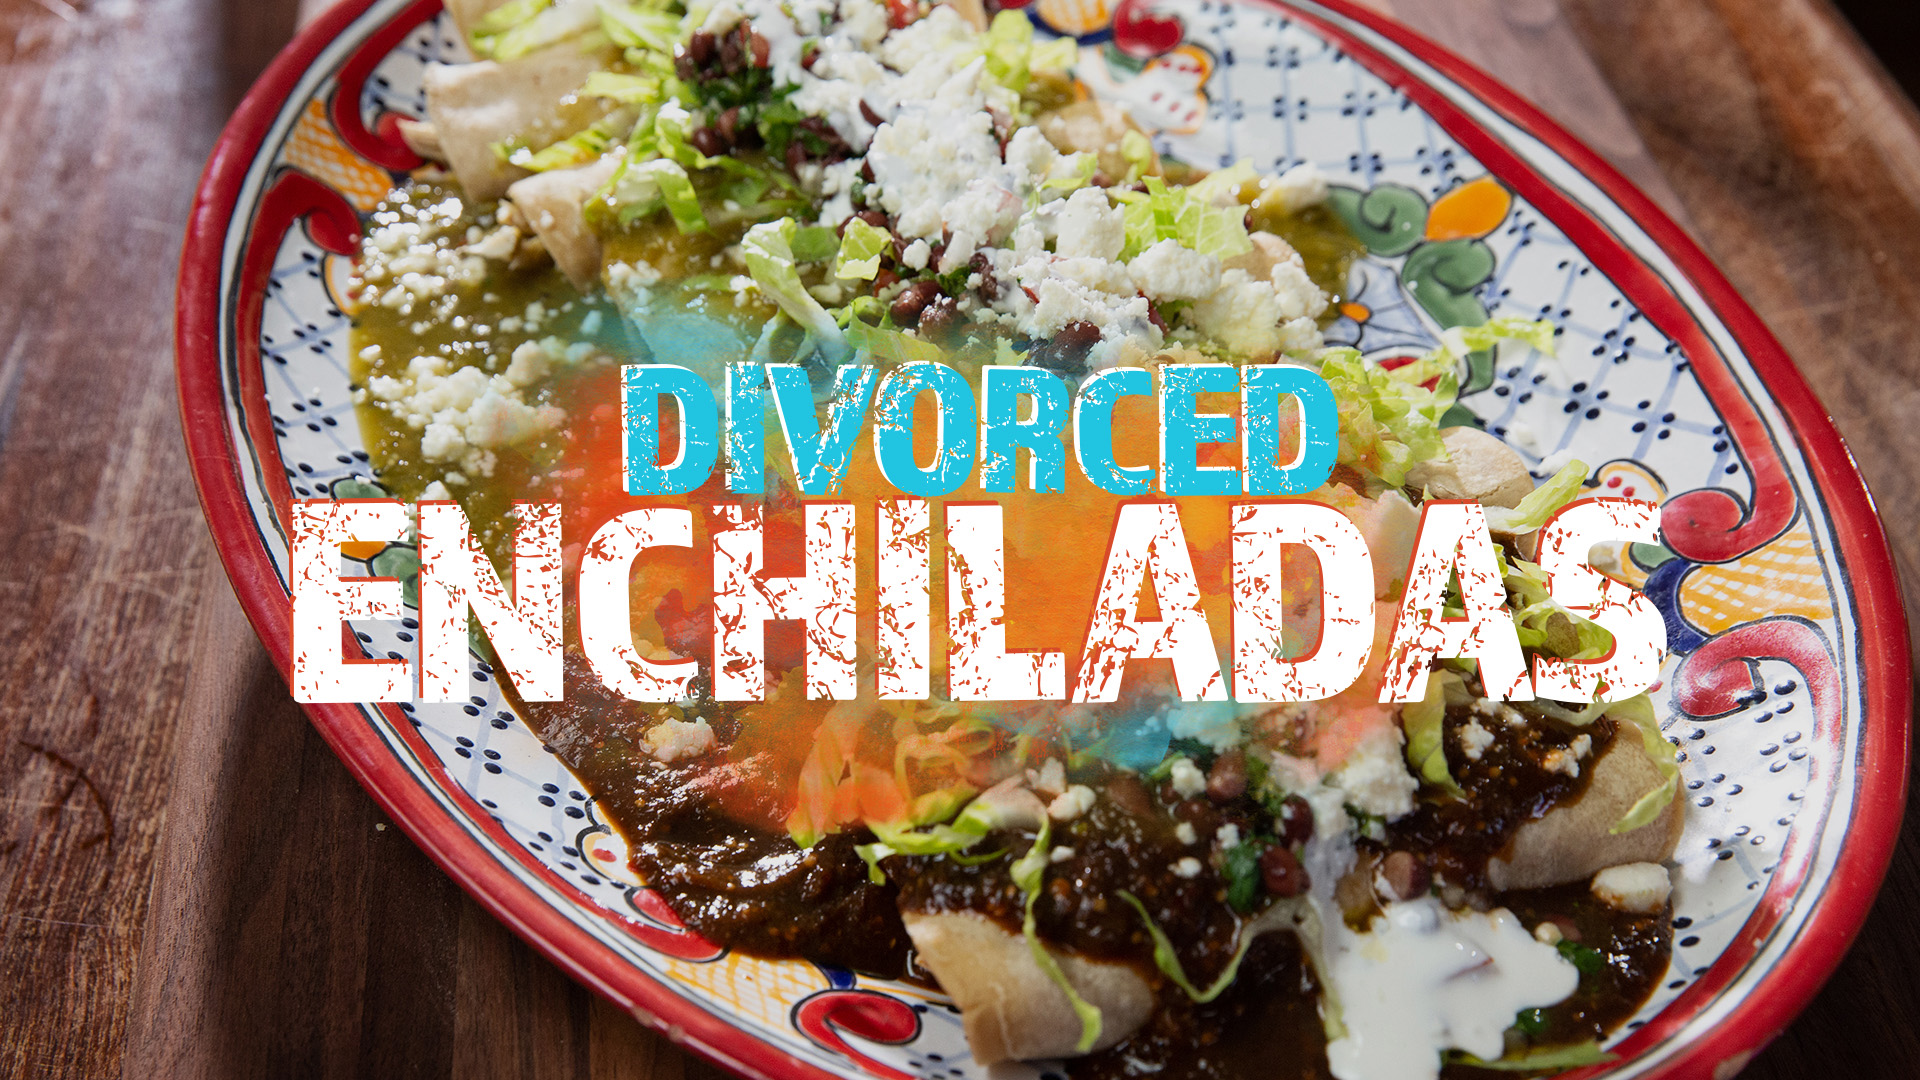 Pump Up El Sabor: Divorced Enchiladas video